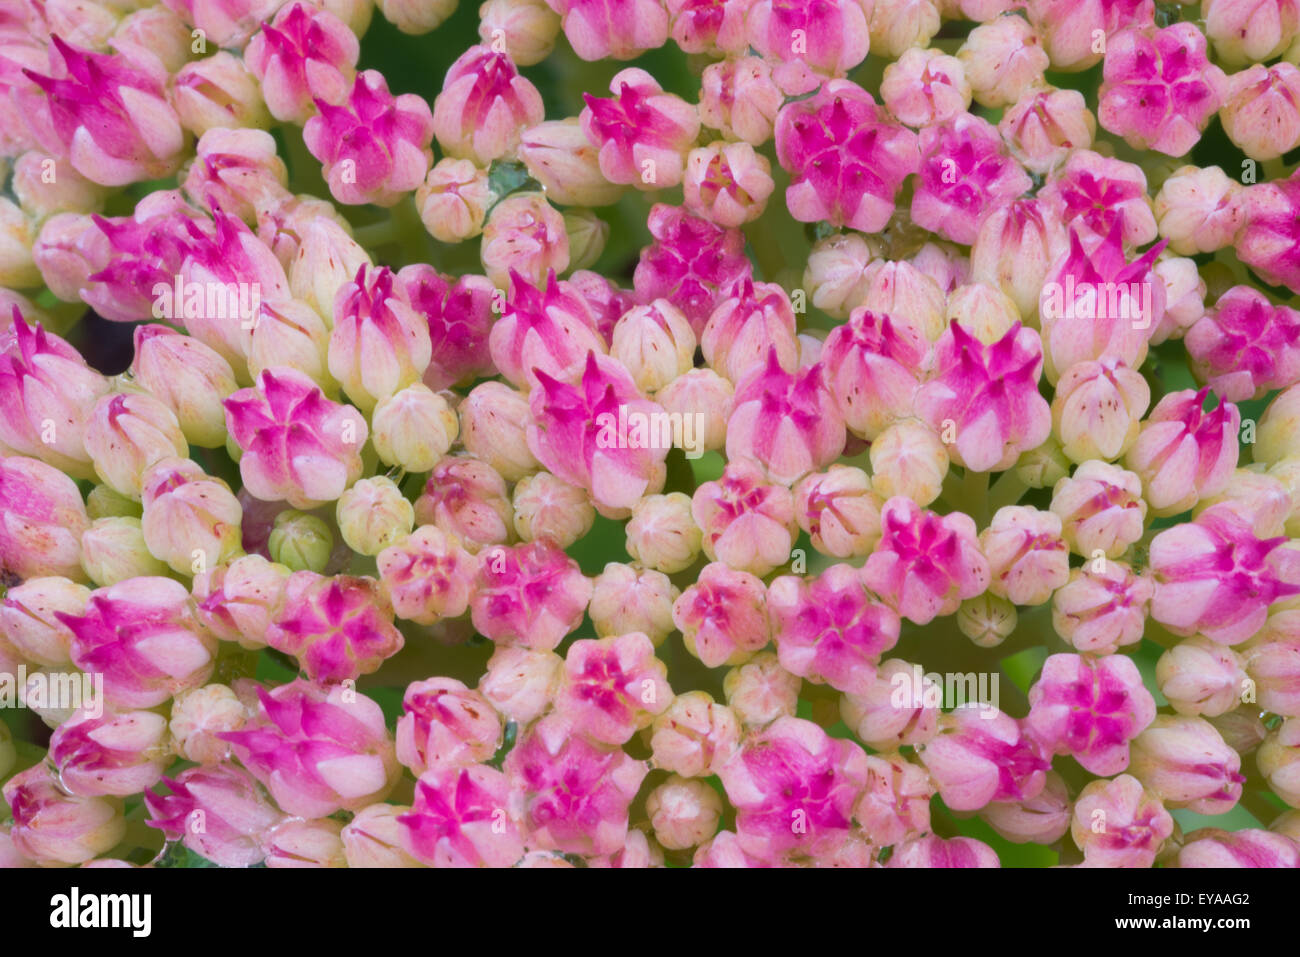 Rosa, Blume, Hintergrund, Blüte, Natur, schöne, floral, bunt, Blütenblatt, Farbe, Schönheit, Blüte, Frühling, Liebe, Botanik, fl Stockfoto